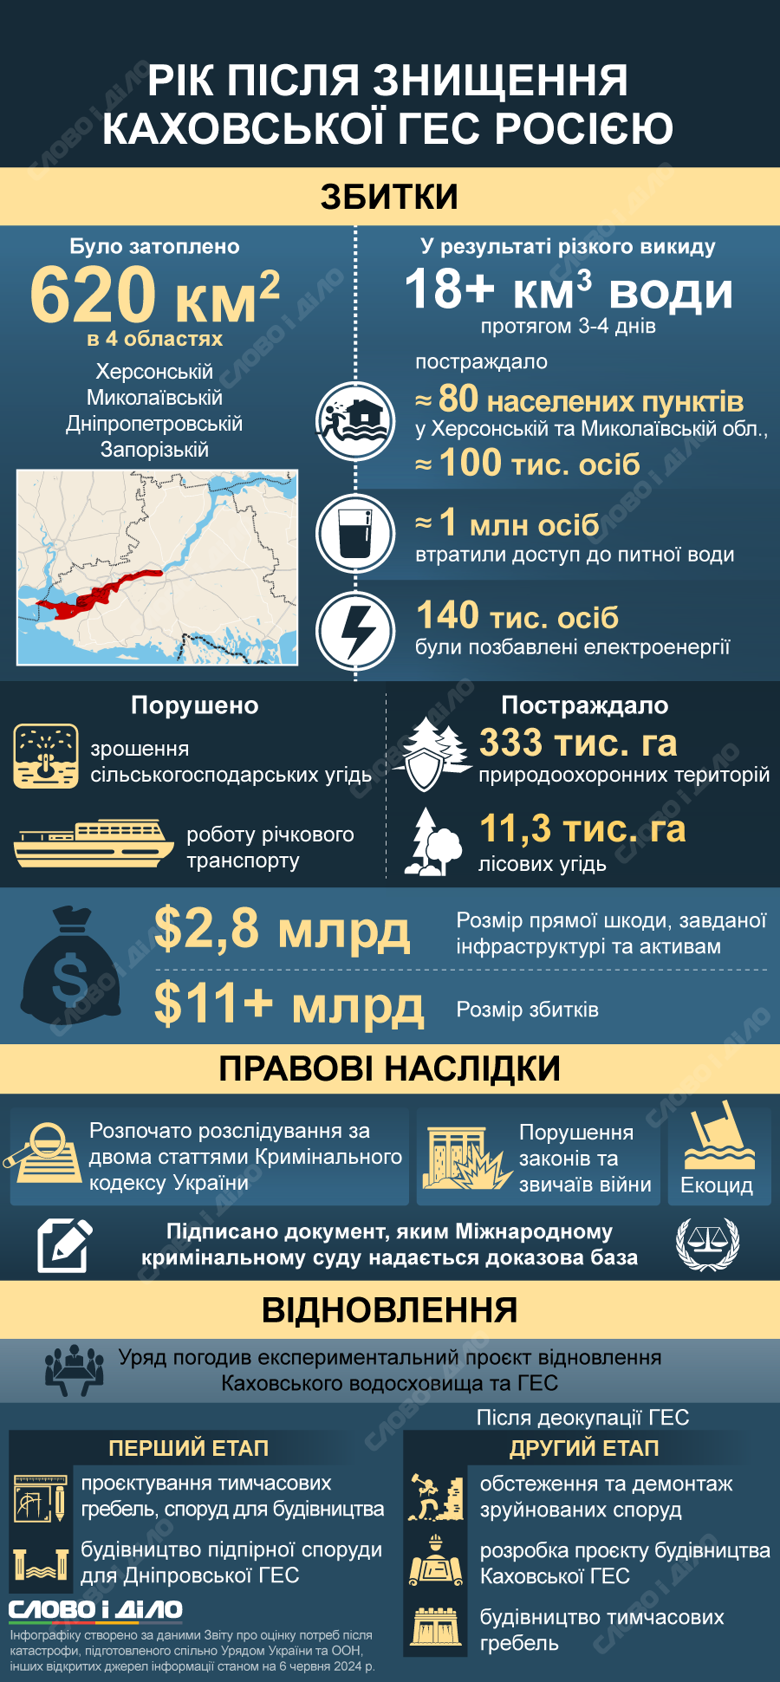 Каховская ГЭС год назад была разрушена в результате подрыва россиянами. Что сейчас известно о последствиях – на инфографике.